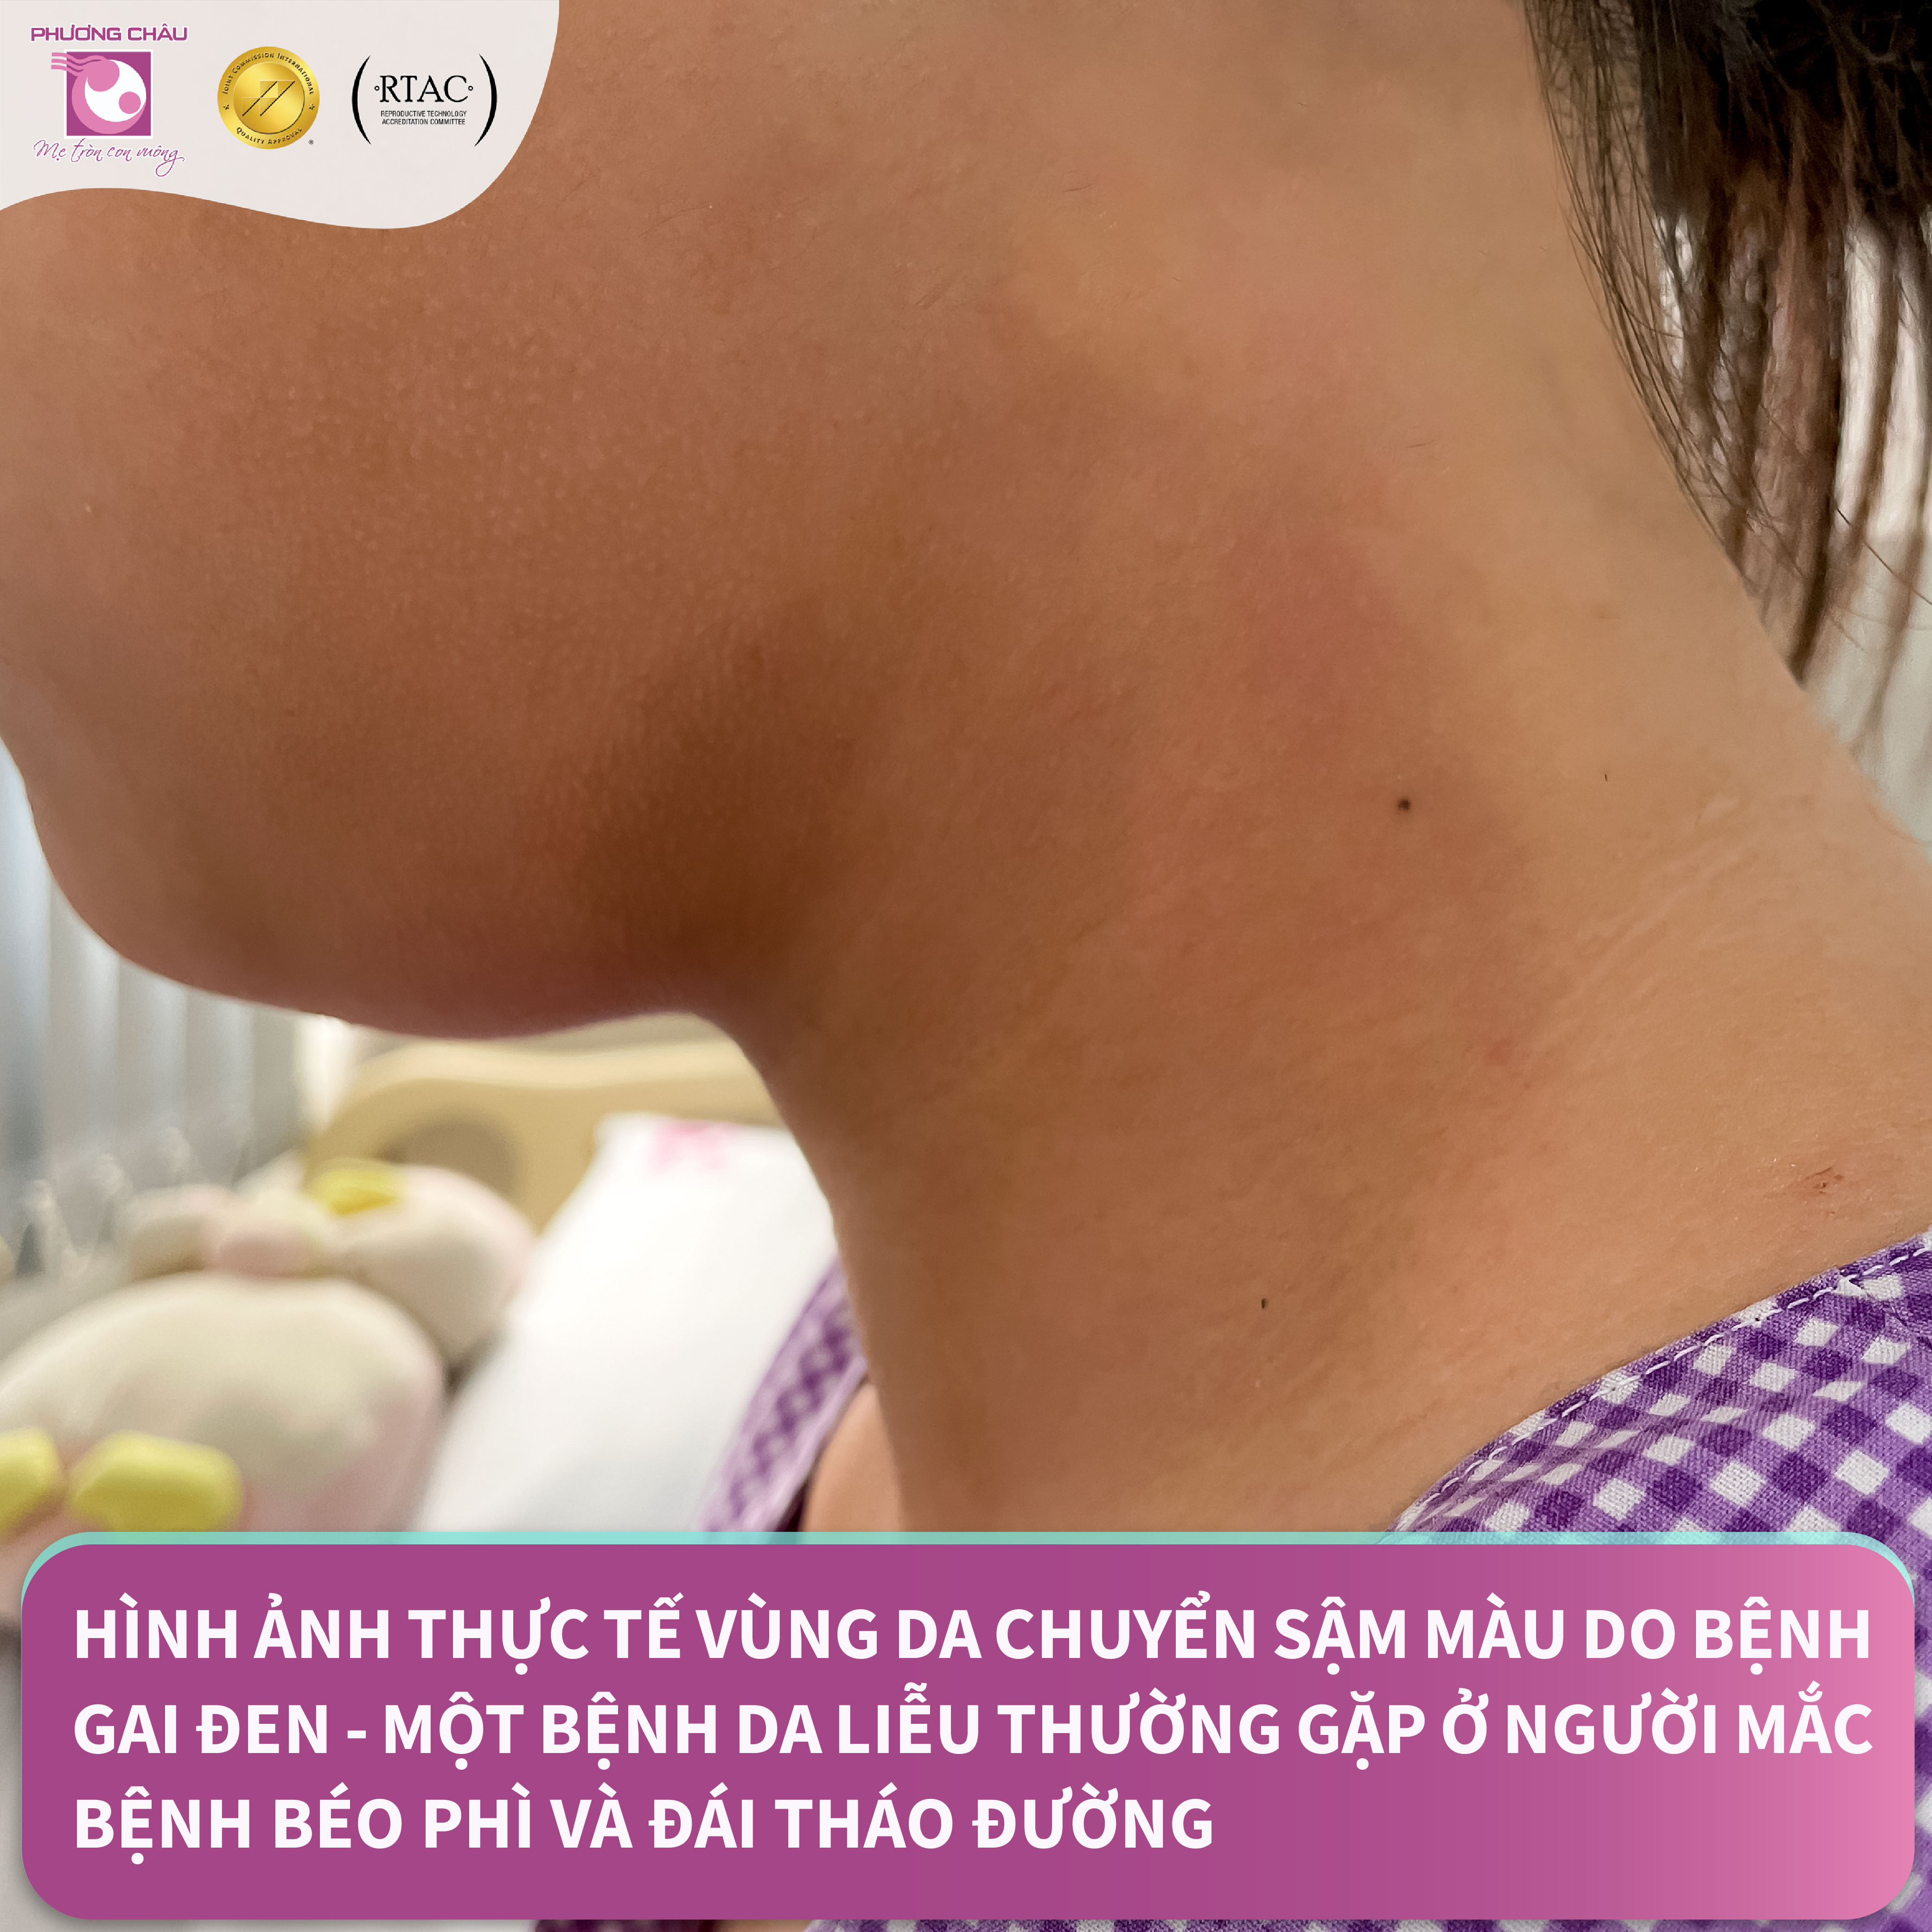 Trung tâm Nội tiết, BVQT Phương Châu có tiếp nhận bé gái chỉ mới 13 tuổi đến khám và phát hiện mắc đái tháo đường type 2.